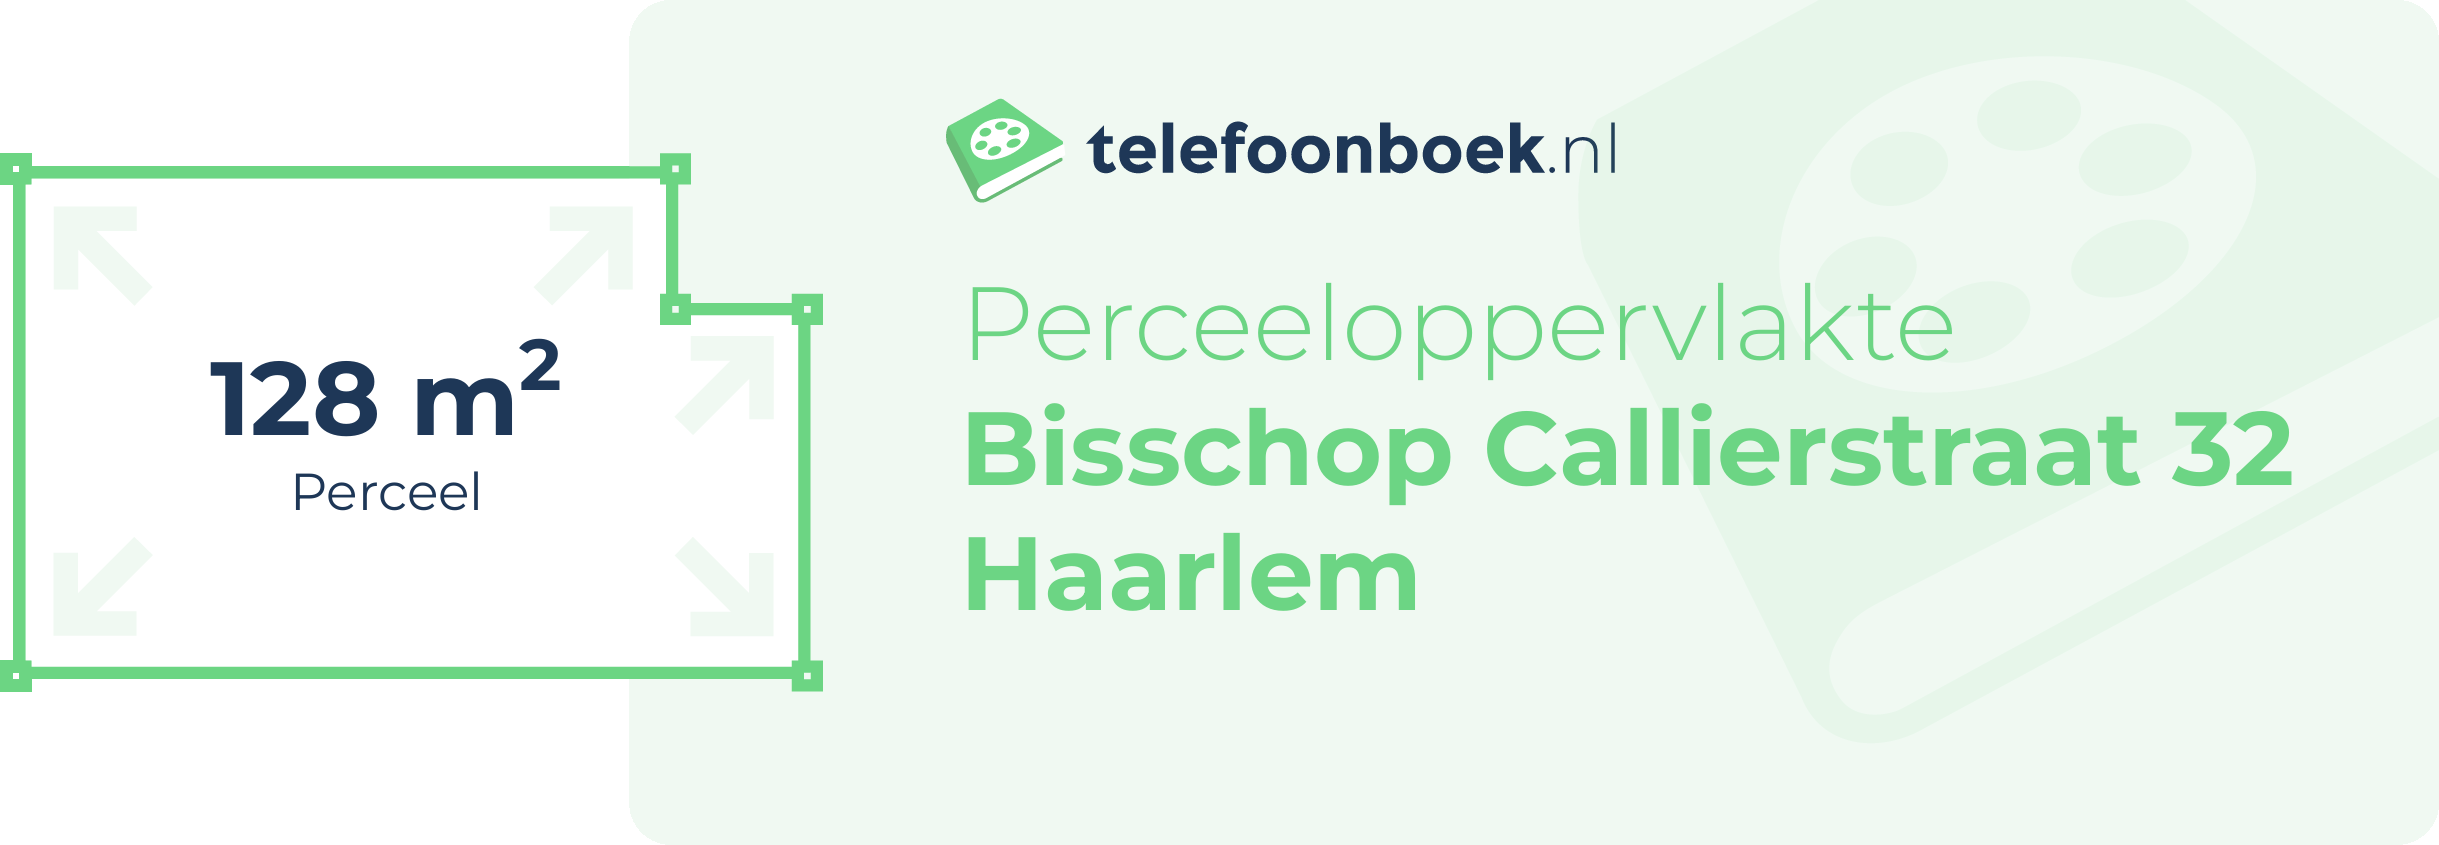 Perceeloppervlakte Bisschop Callierstraat 32 Haarlem